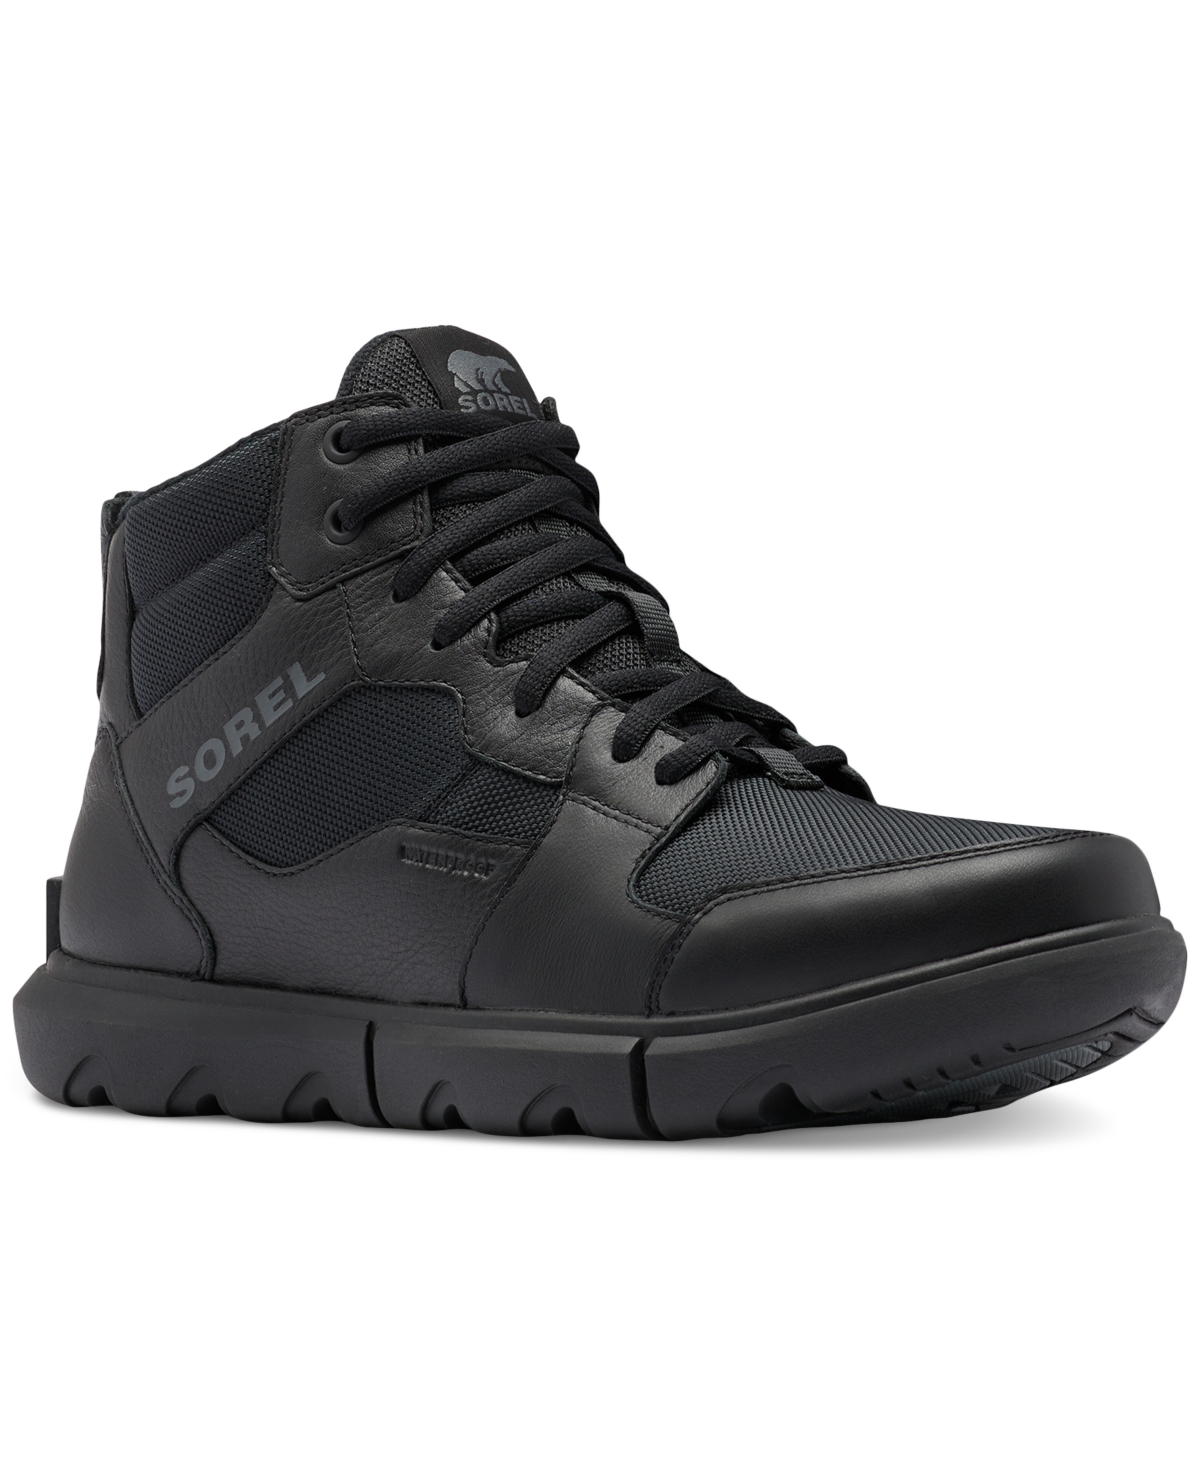 Men's Explorer Waterproof Sneakers - Black, Black